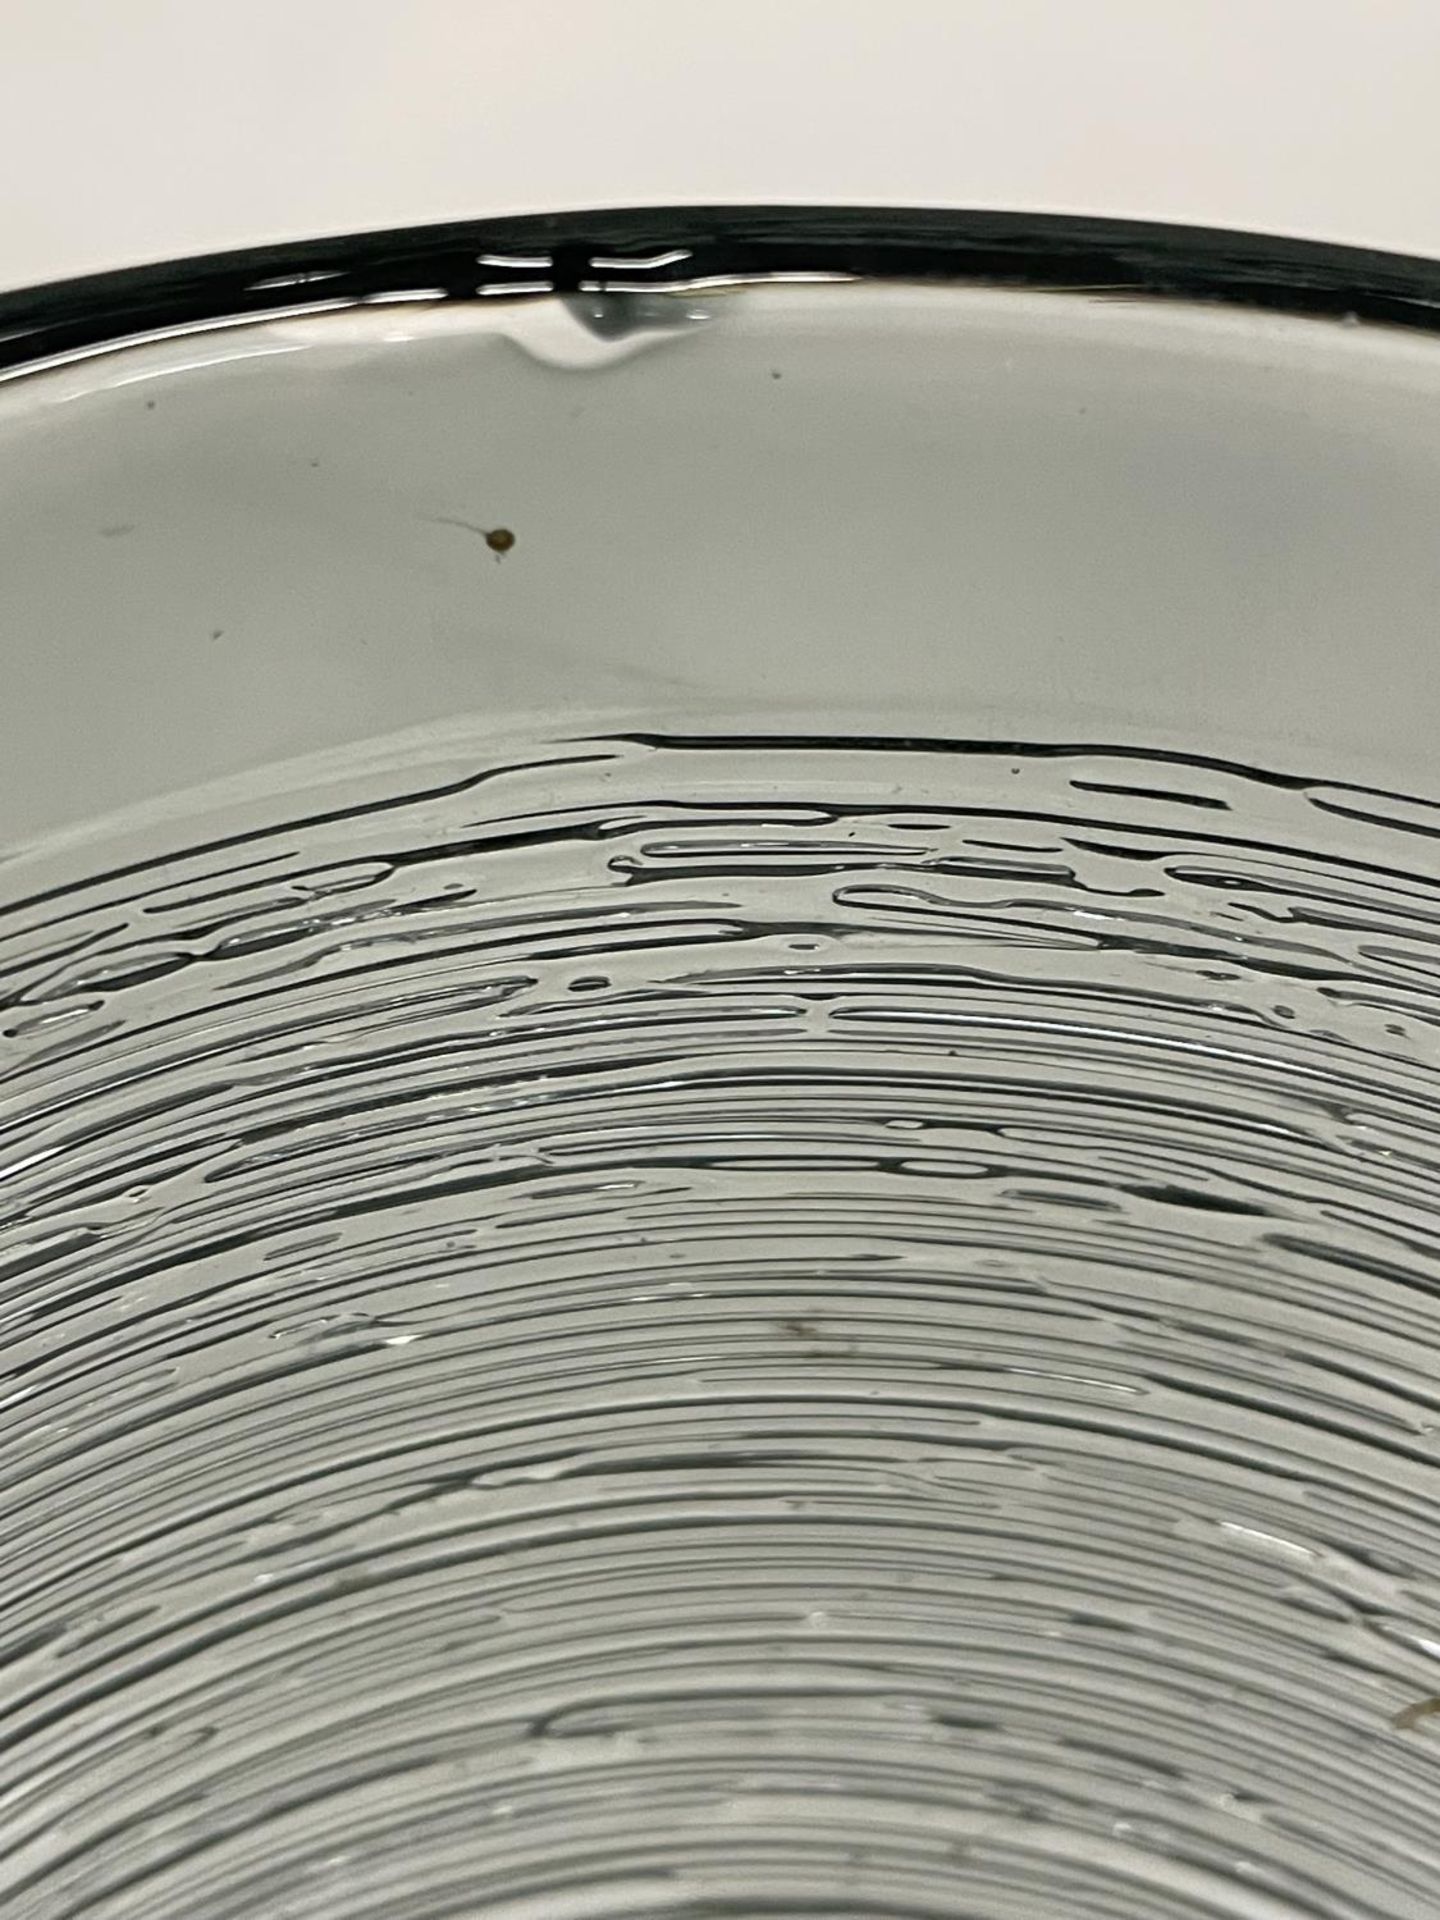 A SPUN GLASS VASE POSSIBLY BY BENGT EDENFELDT 15CM HIGH - Image 5 of 5